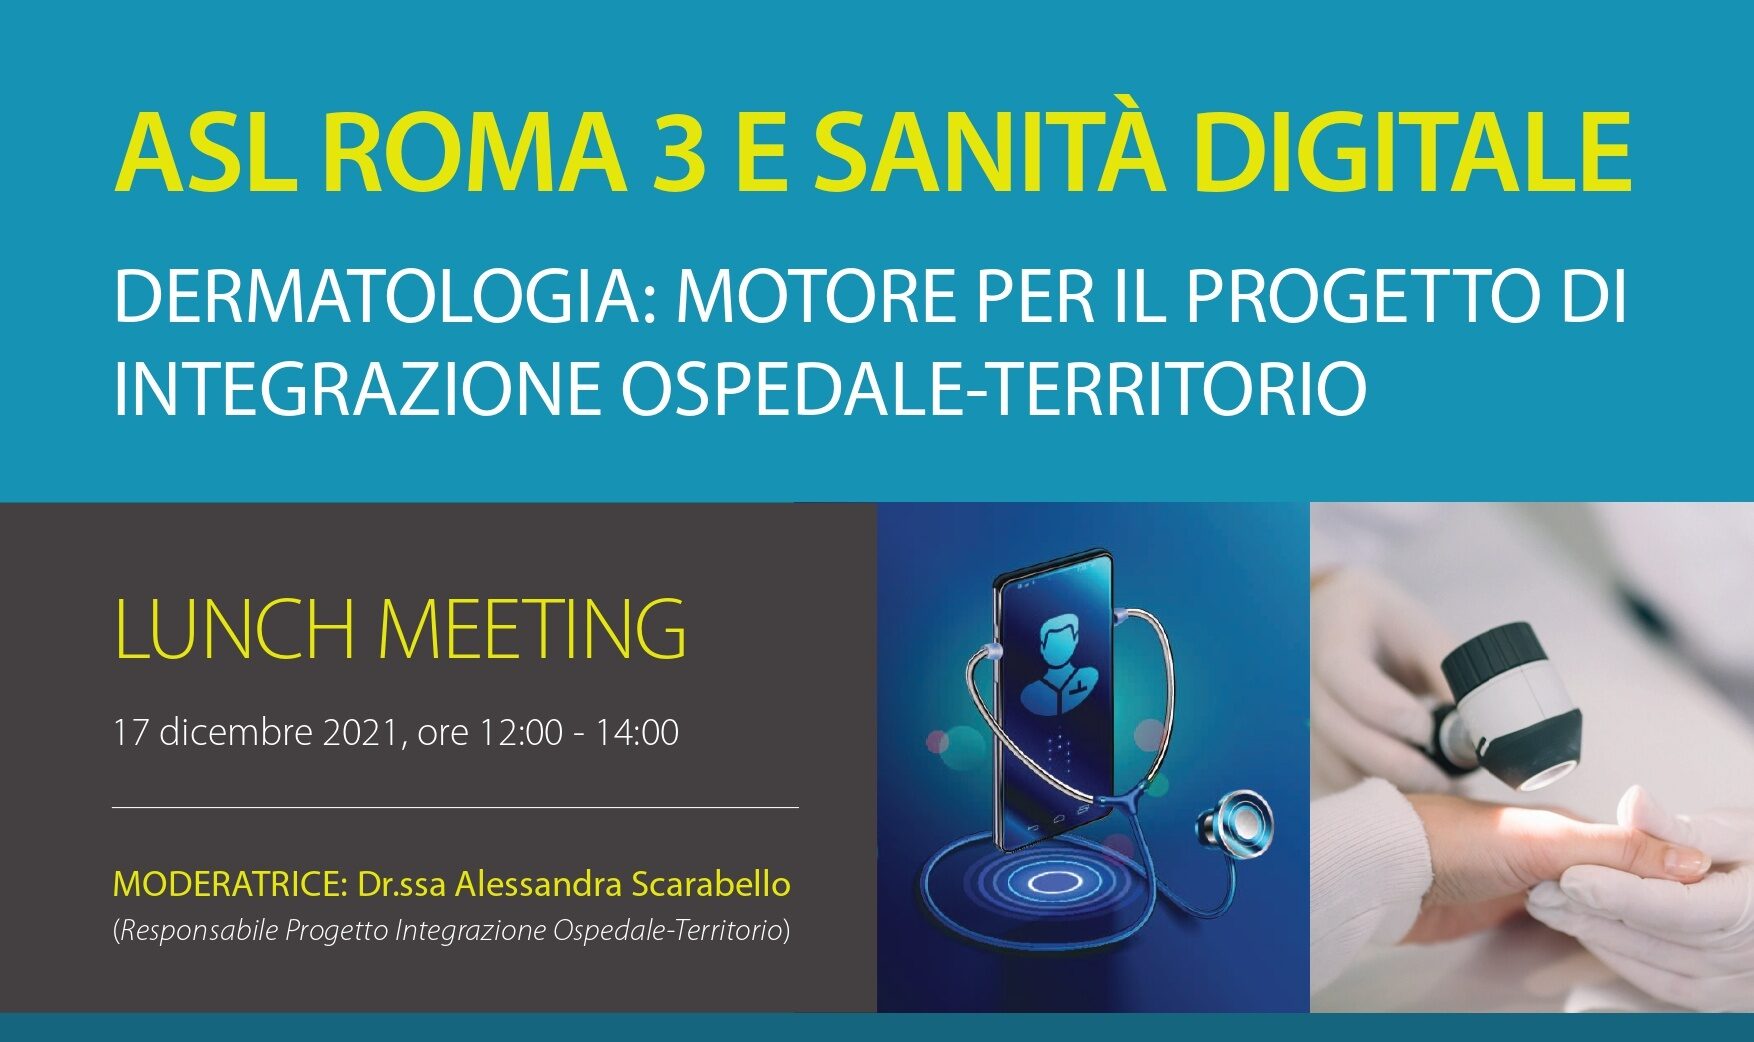 ASL ROMA 3 E SANITÀ DIGITALE DERMATOLOGIA: MOTORE PER IL PROGETTO DI INTEGRAZIONE OSPEDALE-TERRITORIO – LUNCH MEETING